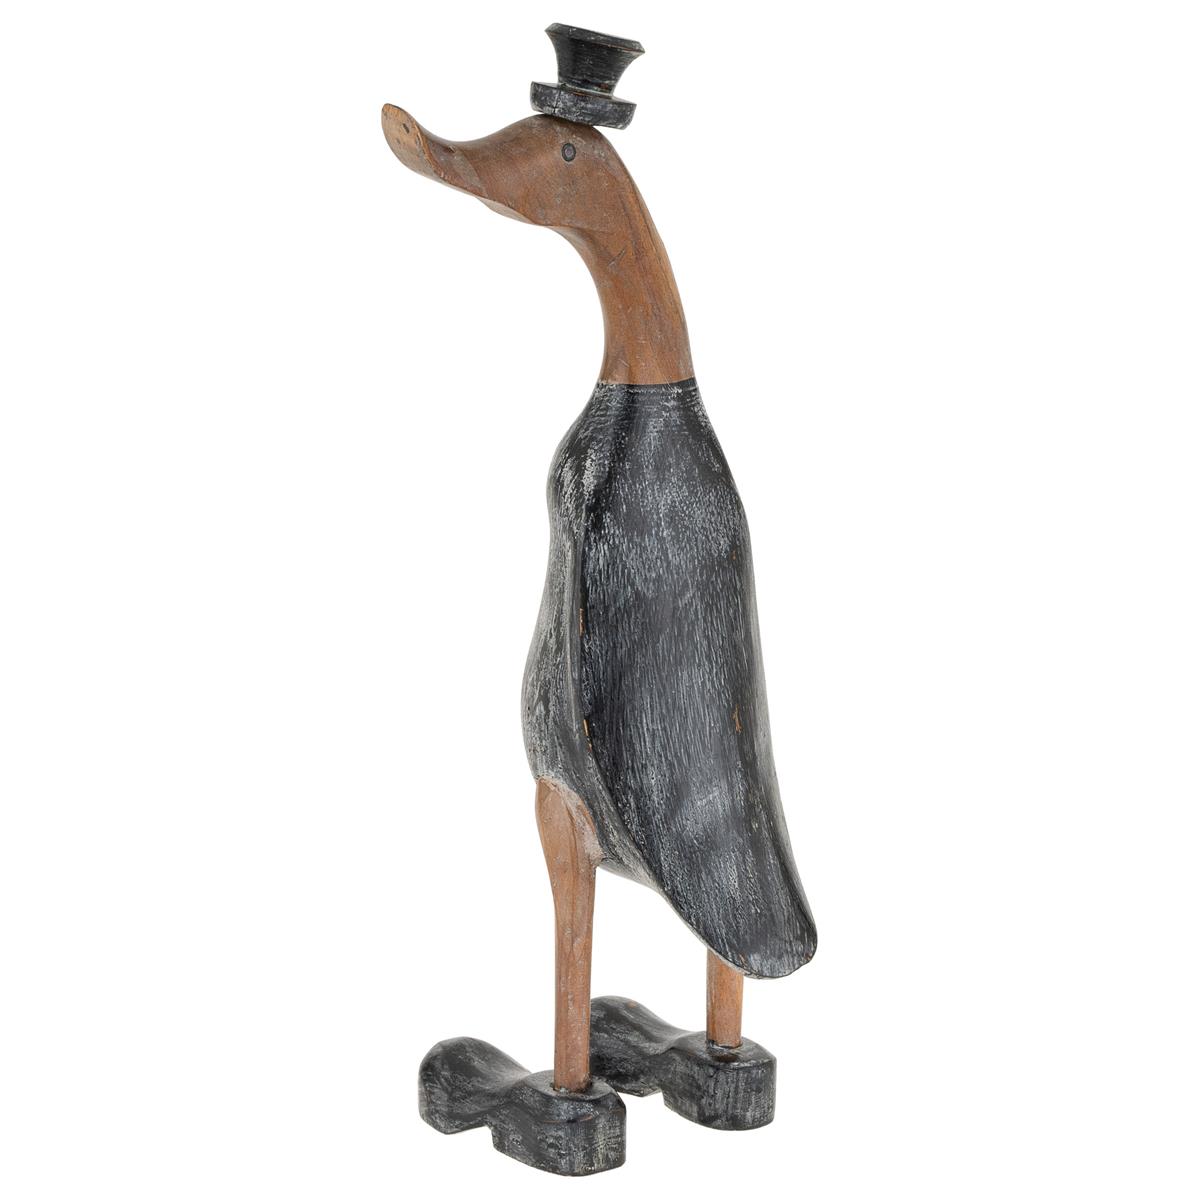 Holz Laufente mit Schuhen,wodden duck 45-50 cm Bambuswurzel-Ente in Schuhen ca 